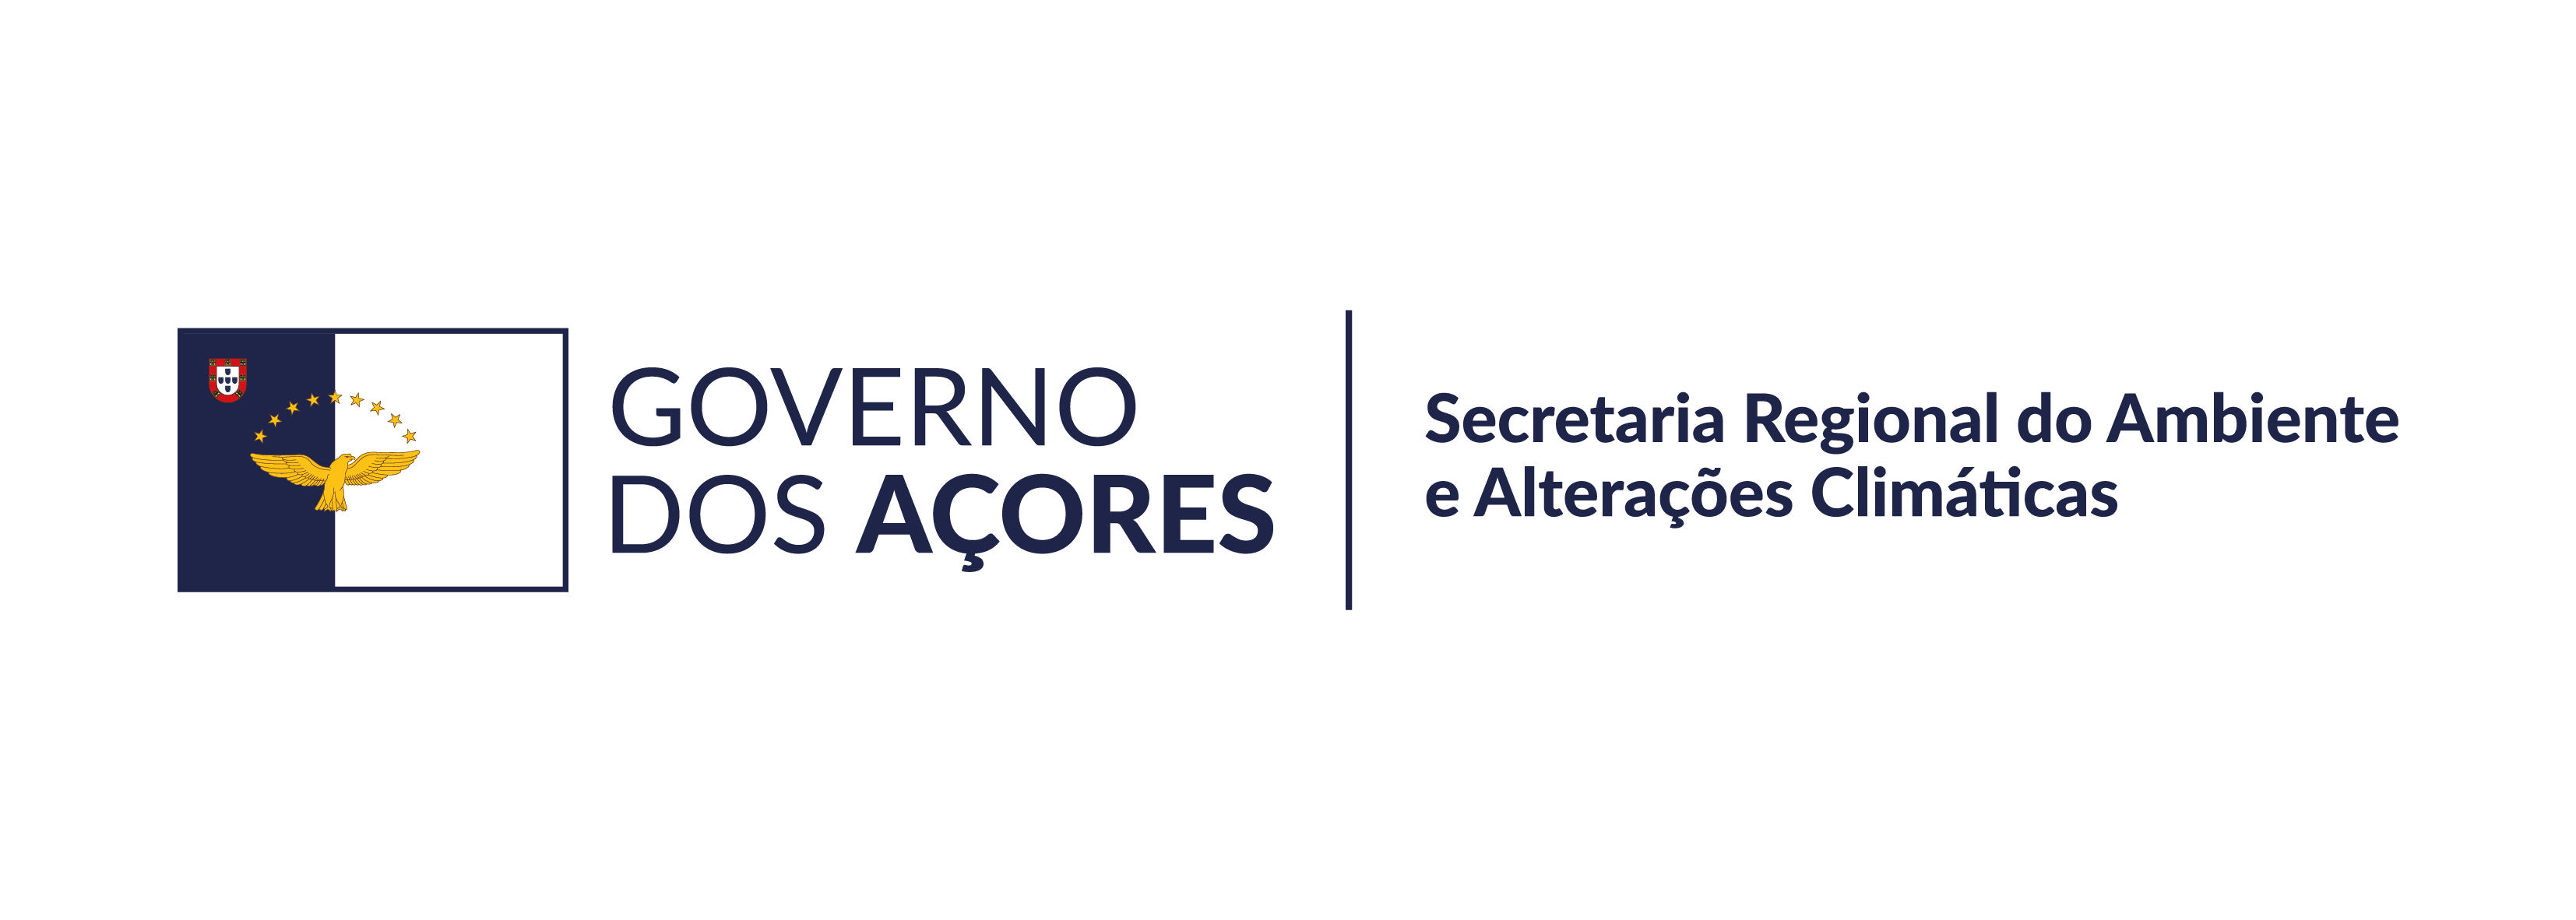 Secretaria Regional do Ambiente e Alterações Climáticas (SRAAC) 